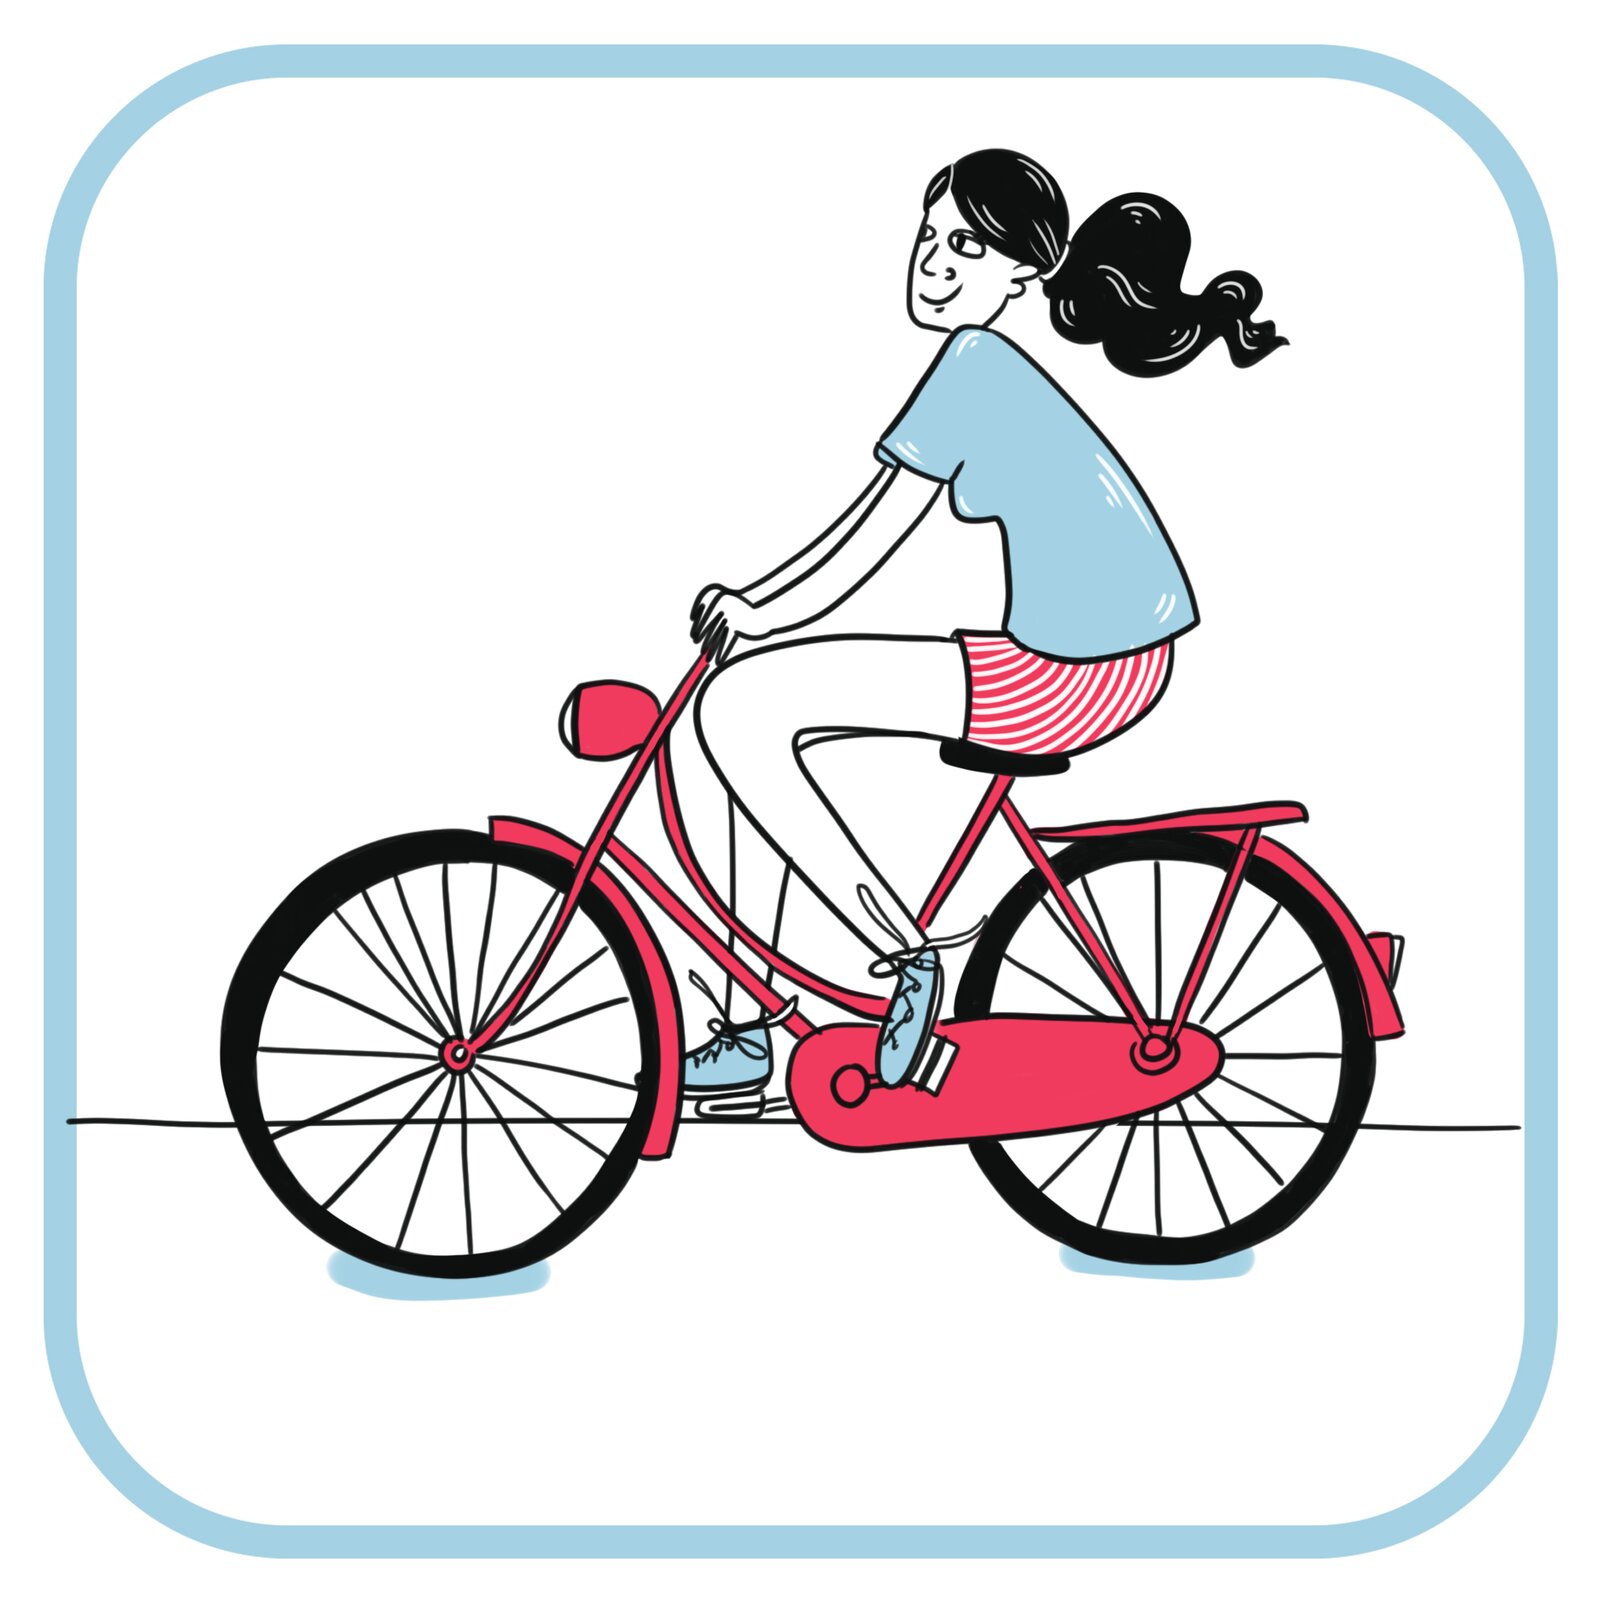 Uśmiechnięta dziewczyna o długich czarnych włosach spiętych w kucyka jedzie na różowym rowerze. Ubrana jest w niebieski t-shirt  i w różowe krótkie spodnie.